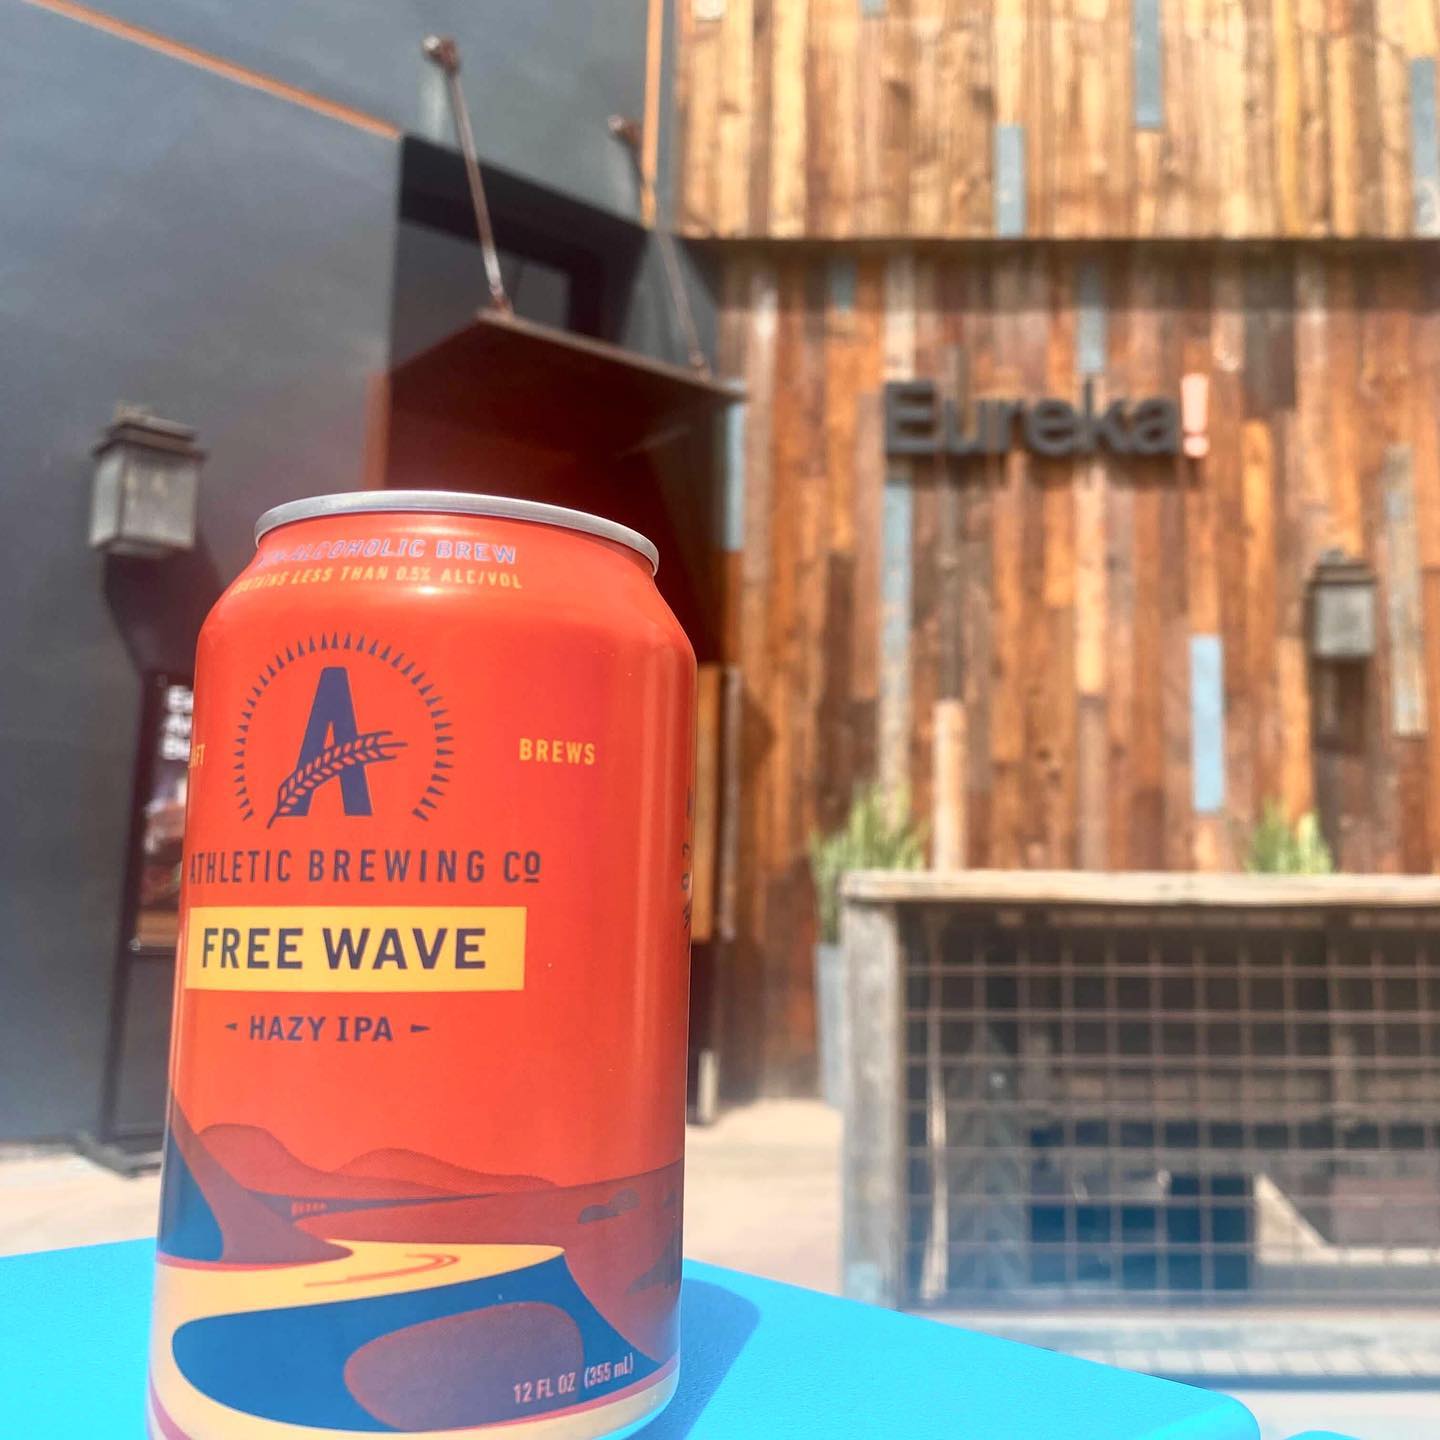 Athletic Brewing Company (Non-Alcoholic) Free Wave Hazy IPA